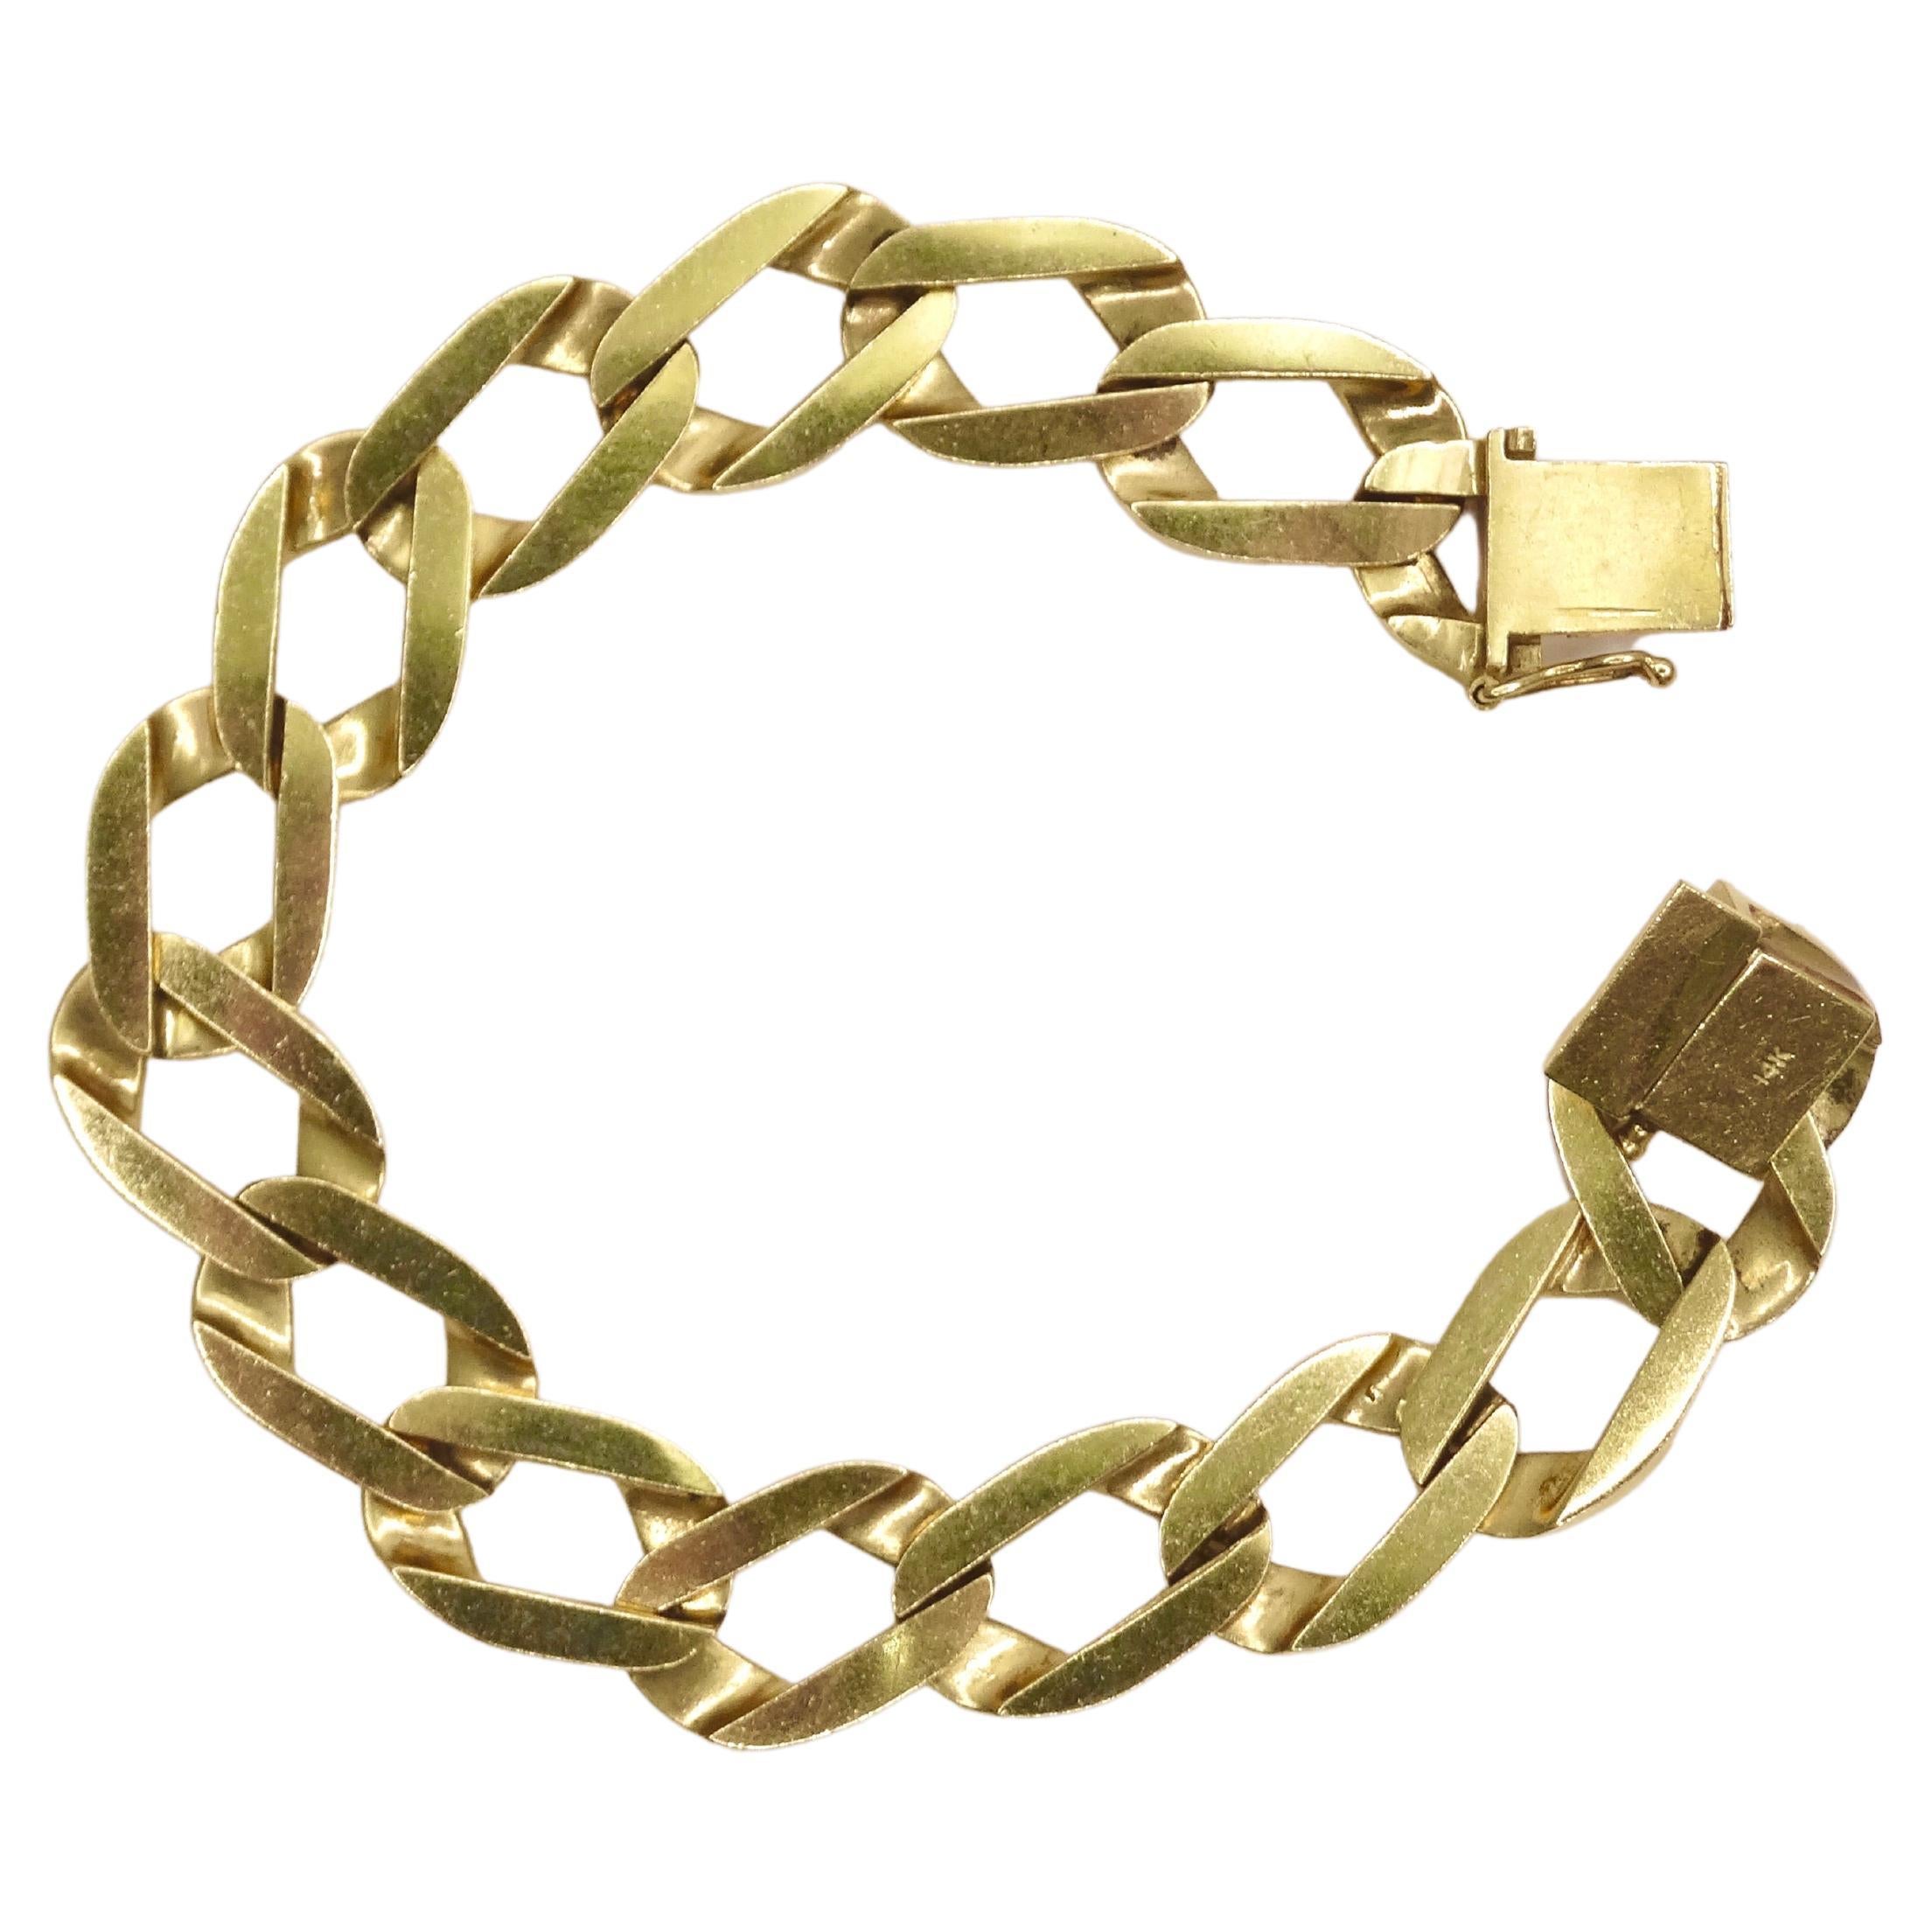 Ein schweres Miami Cuban Link Bracelet, große goldene Glieder schmücken Ihr Handgelenk und geben Ihrem ganzen Look eine Kante circa 1980er Jahre. Hergestellt aus 14-karätigem Gold, das ein Leben lang halten wird. Tragen Sie dazu ein grafisches